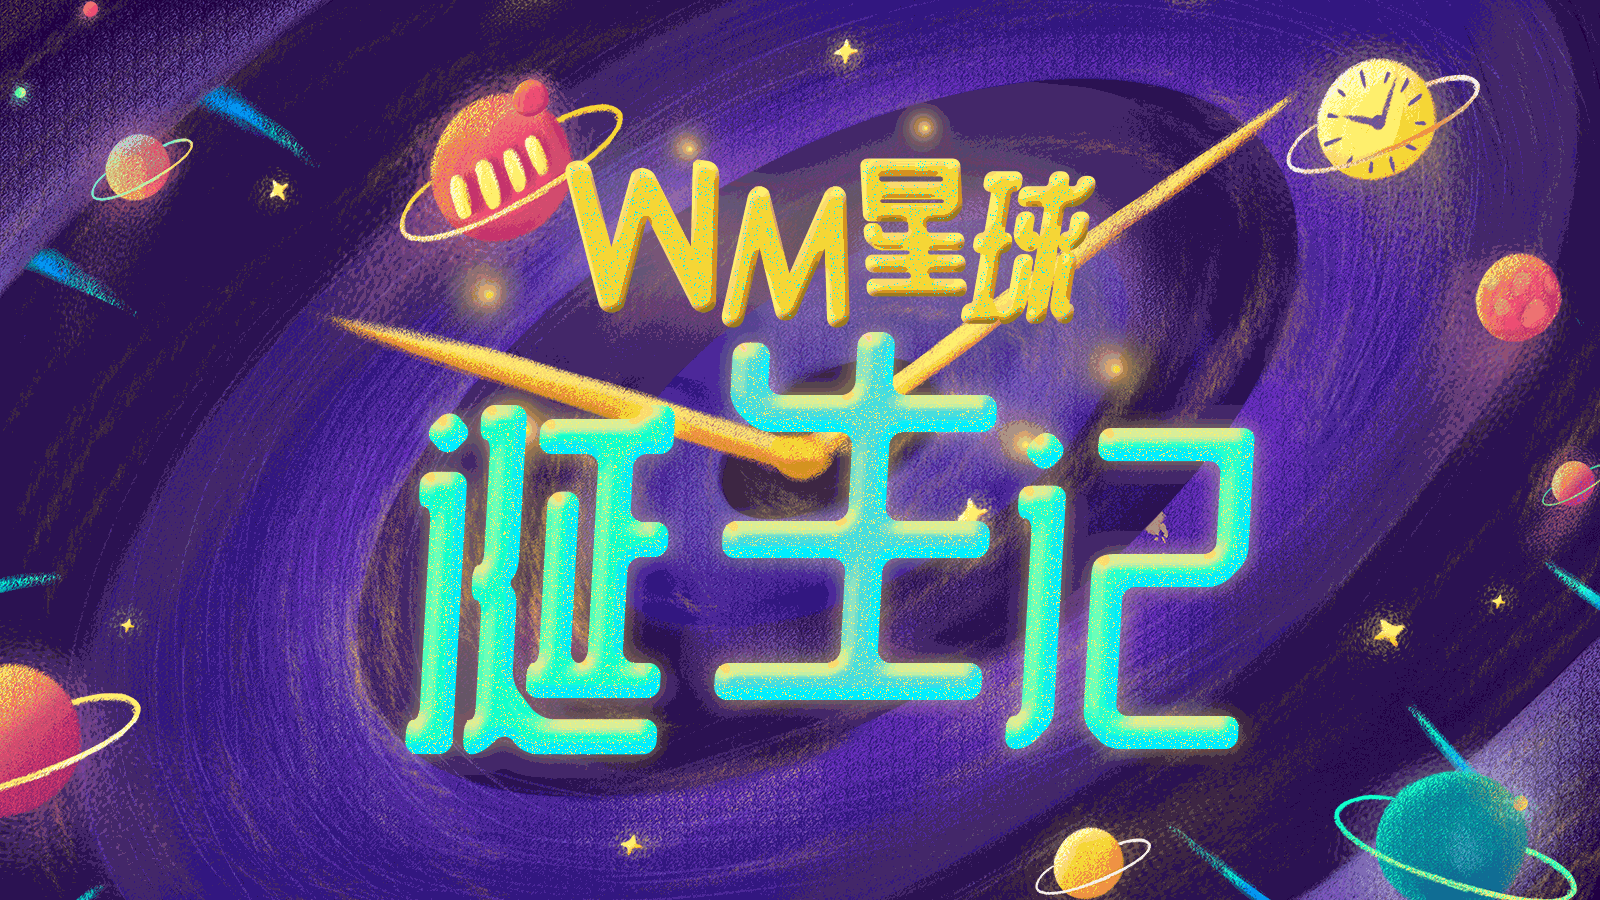 wellymerck 2019年双11 趣味视频《寻找WM1111星人，嗨玩11.11》